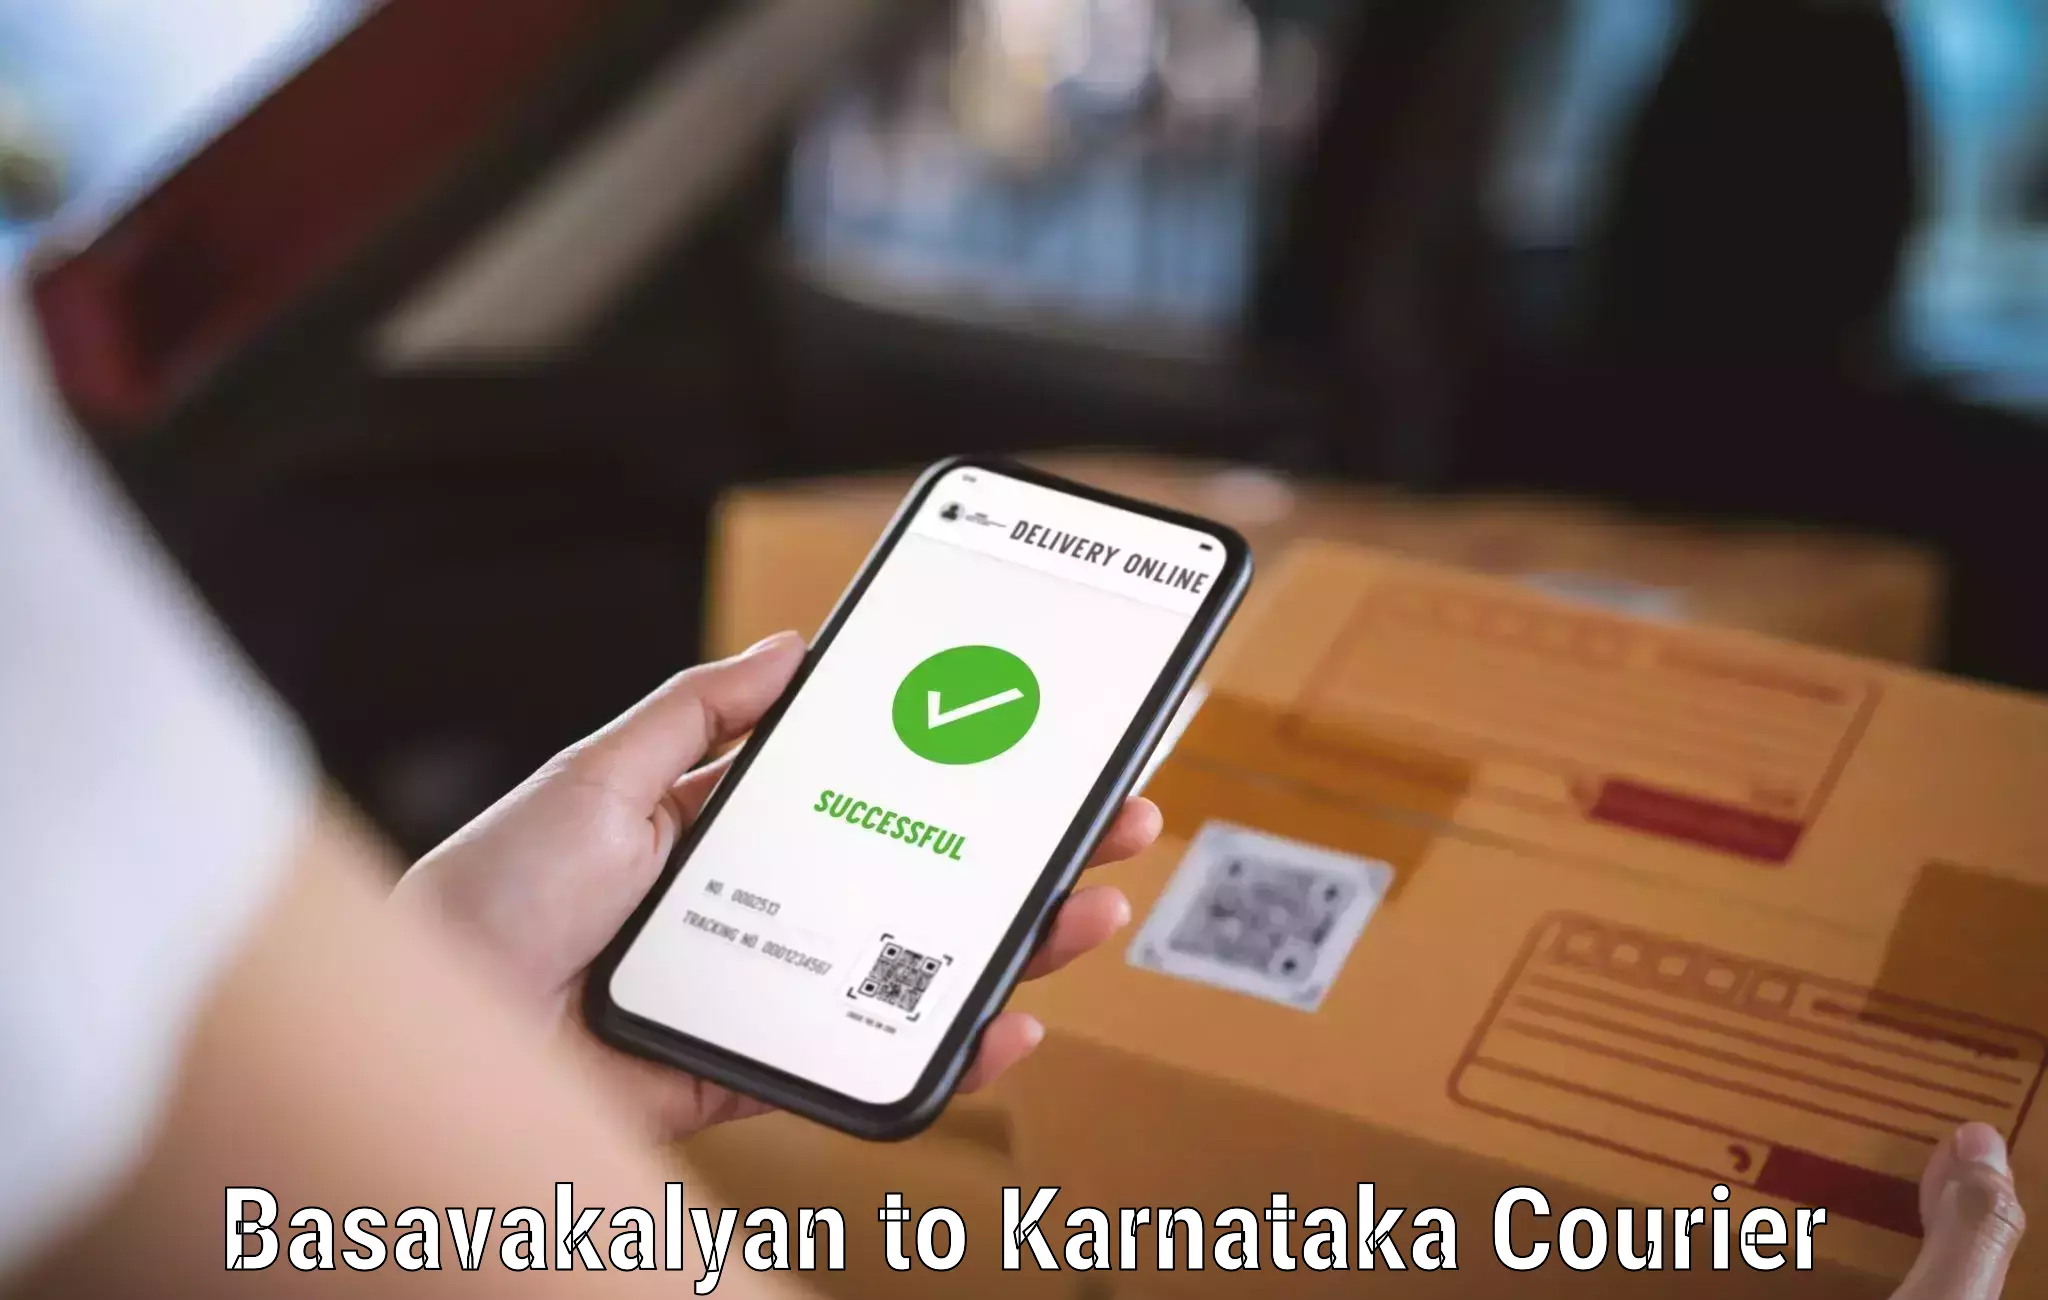 User-friendly delivery service Basavakalyan to Sandur